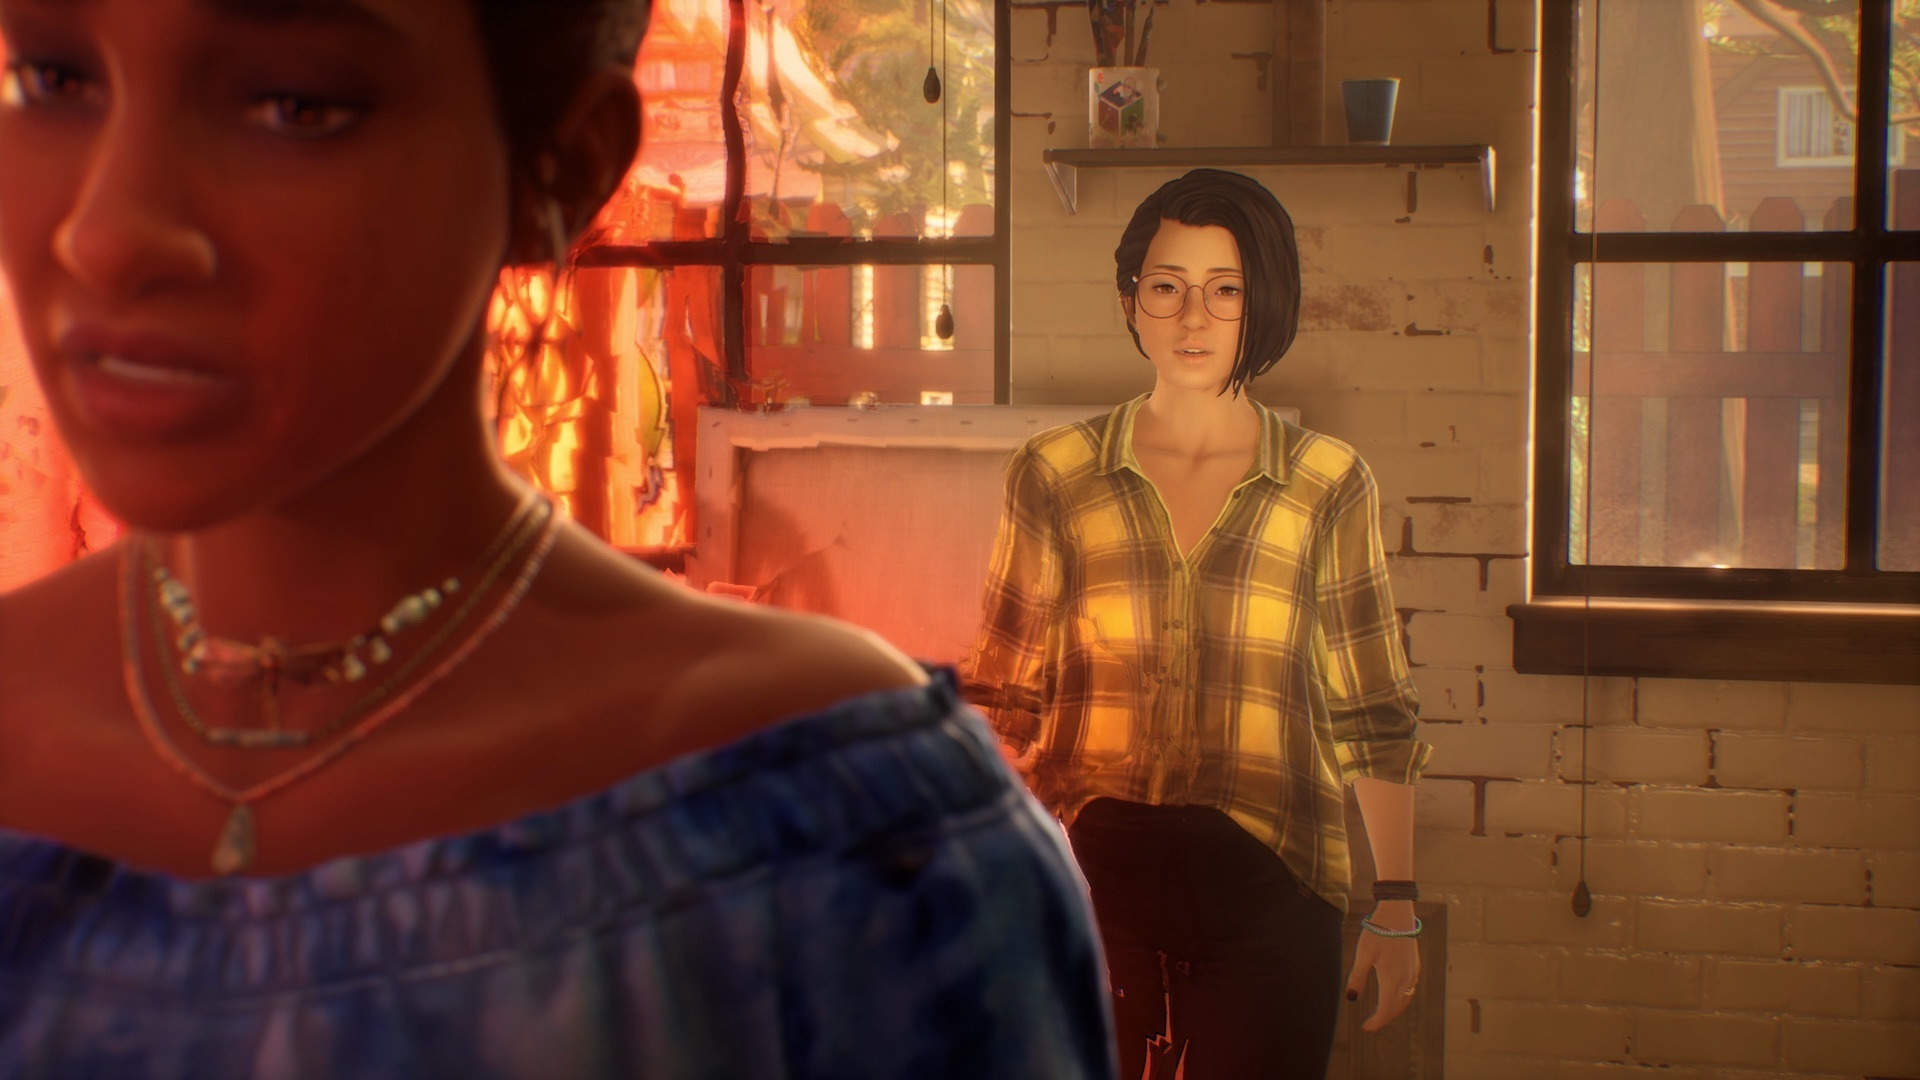 
                                    
                                Life is Strange: True Colors, la recensione: il nuovo videogioco sul potere delle emozioni